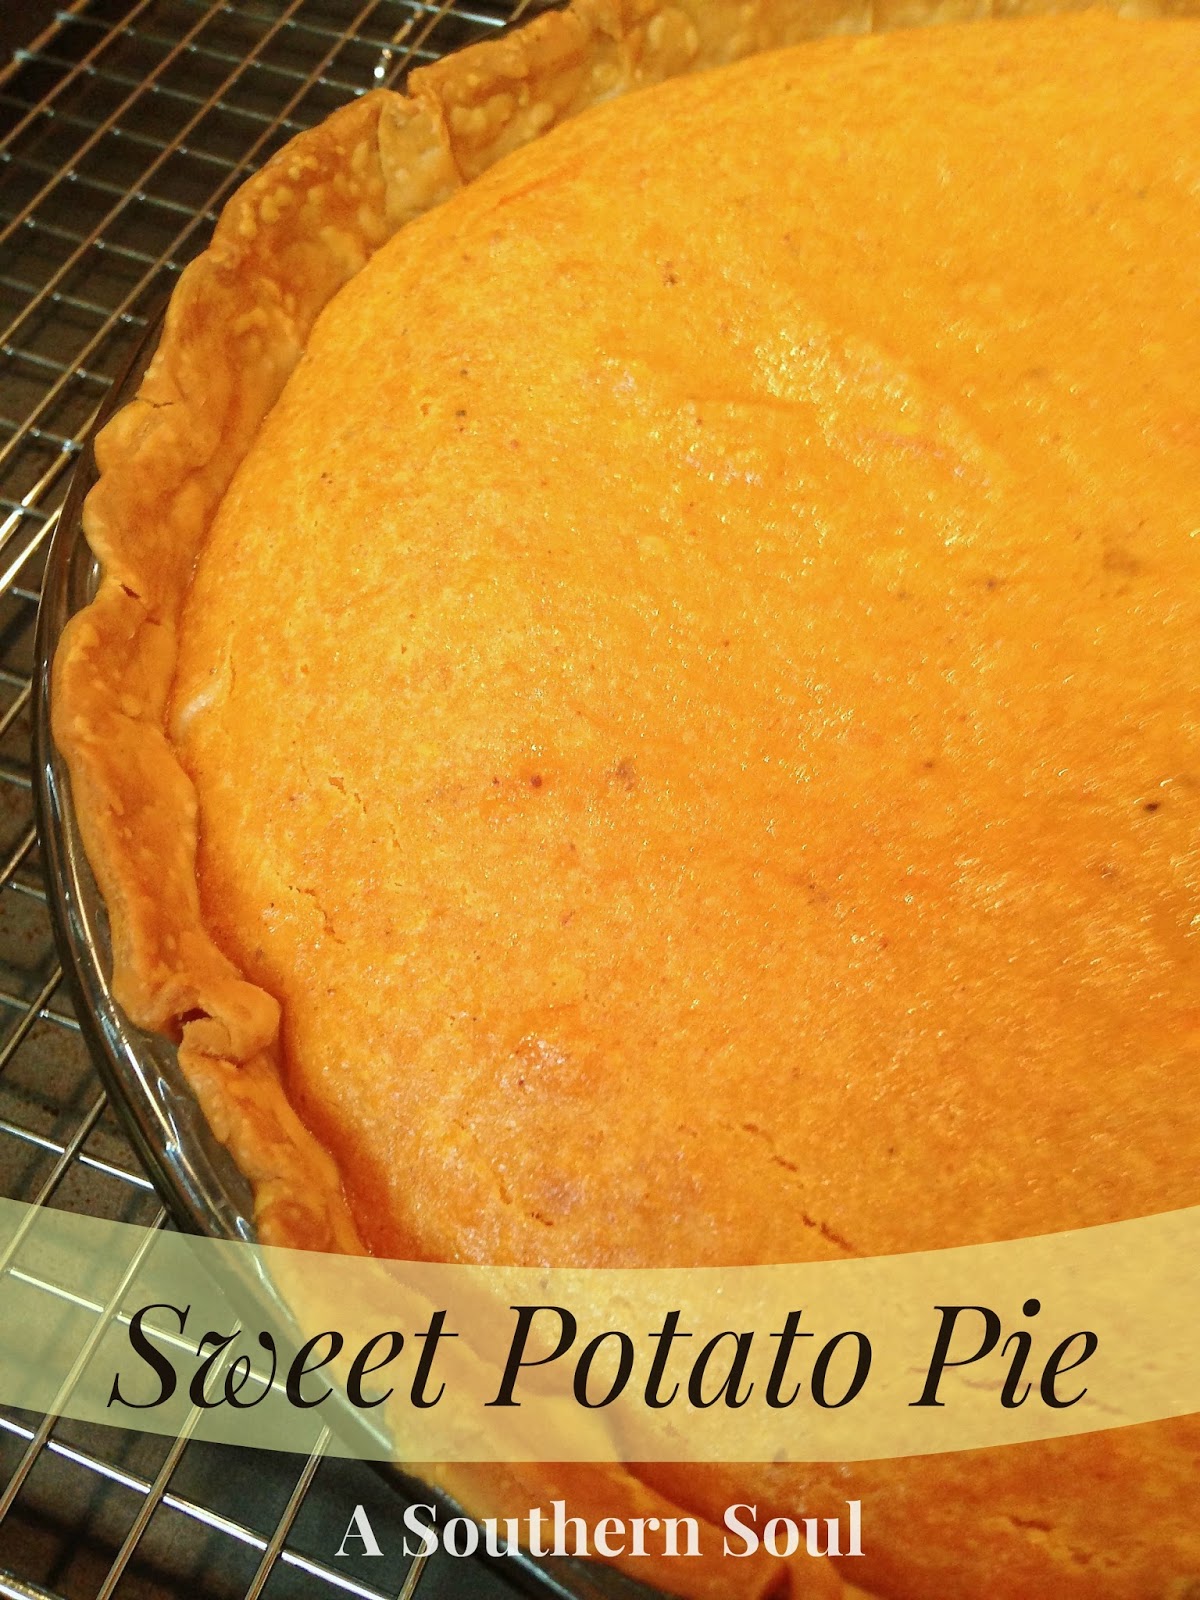 Sweet Potato Pie - A Southern Soul